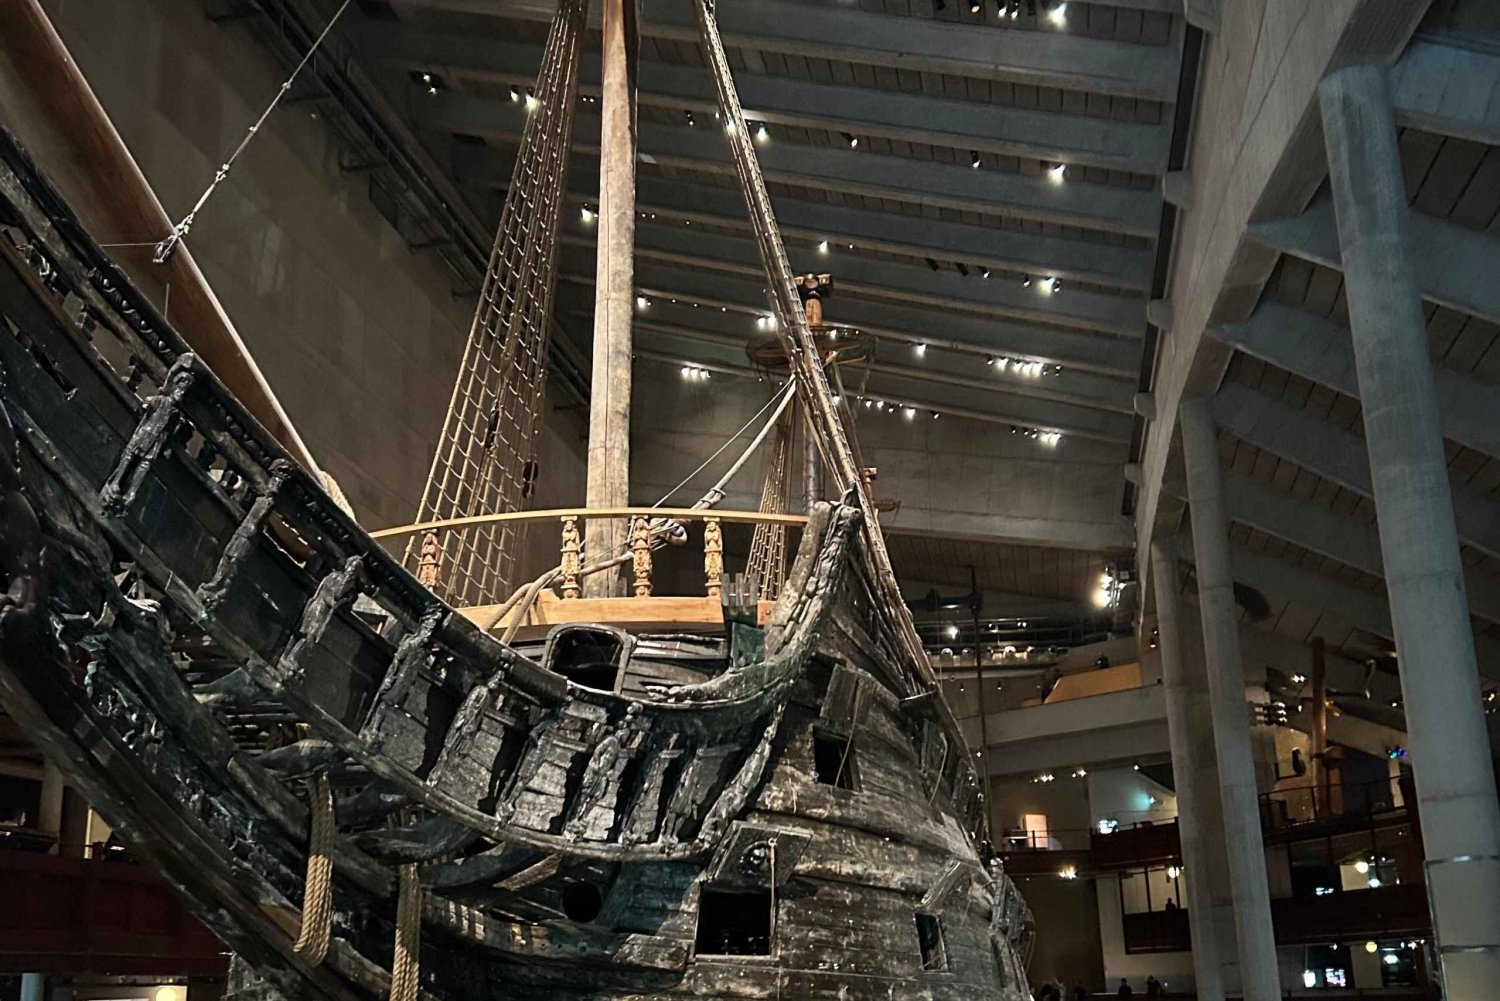 Estocolmo: Visita guiada al Museo Vasa, incluido ticket de entrada